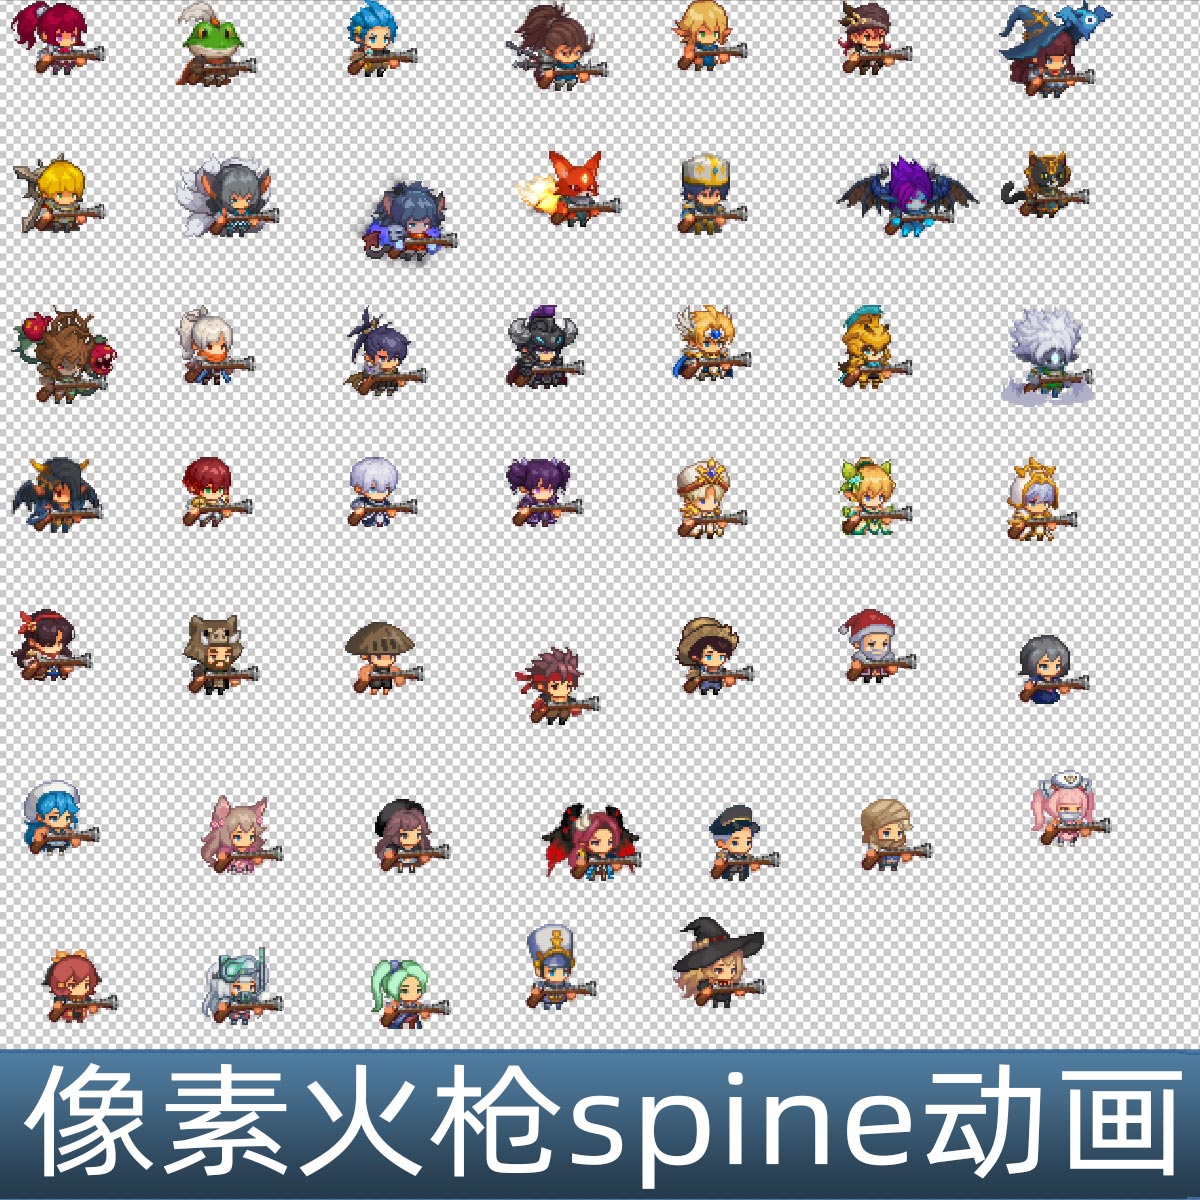 韩国像素火枪spine骨骼动画 47个小人动画 手游游戏素材